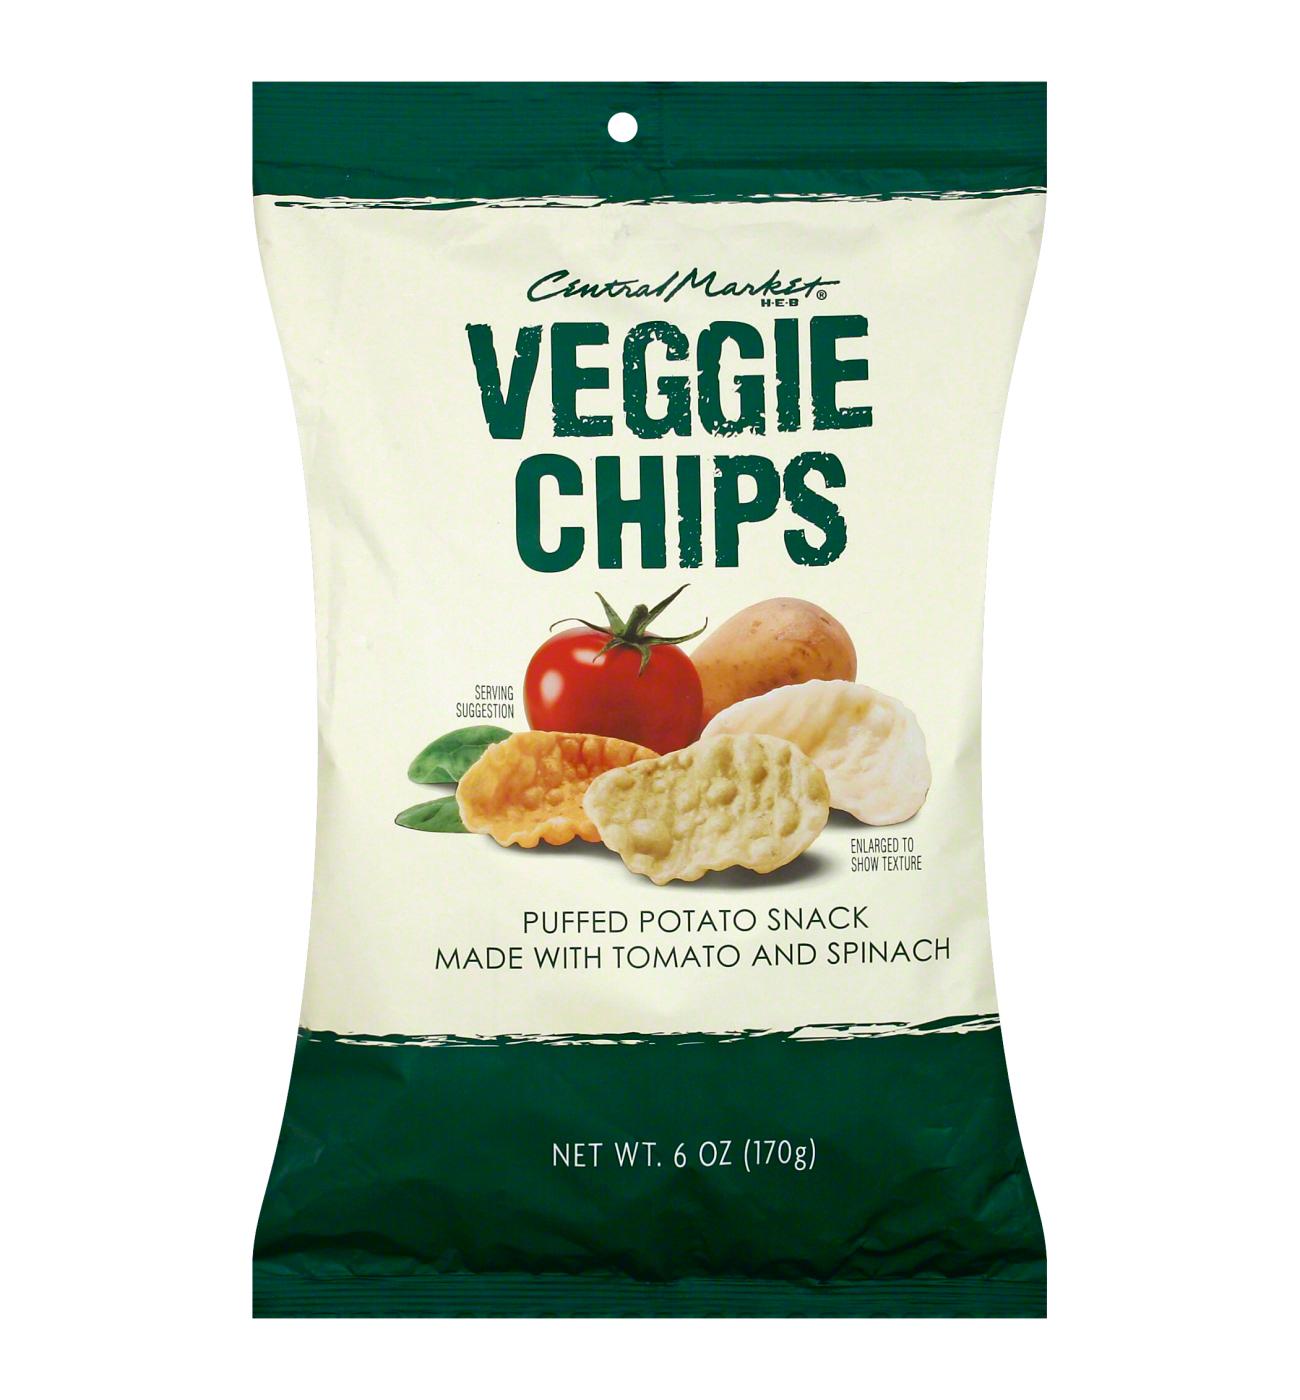 Central Market Veggie Chips; image 1 of 2